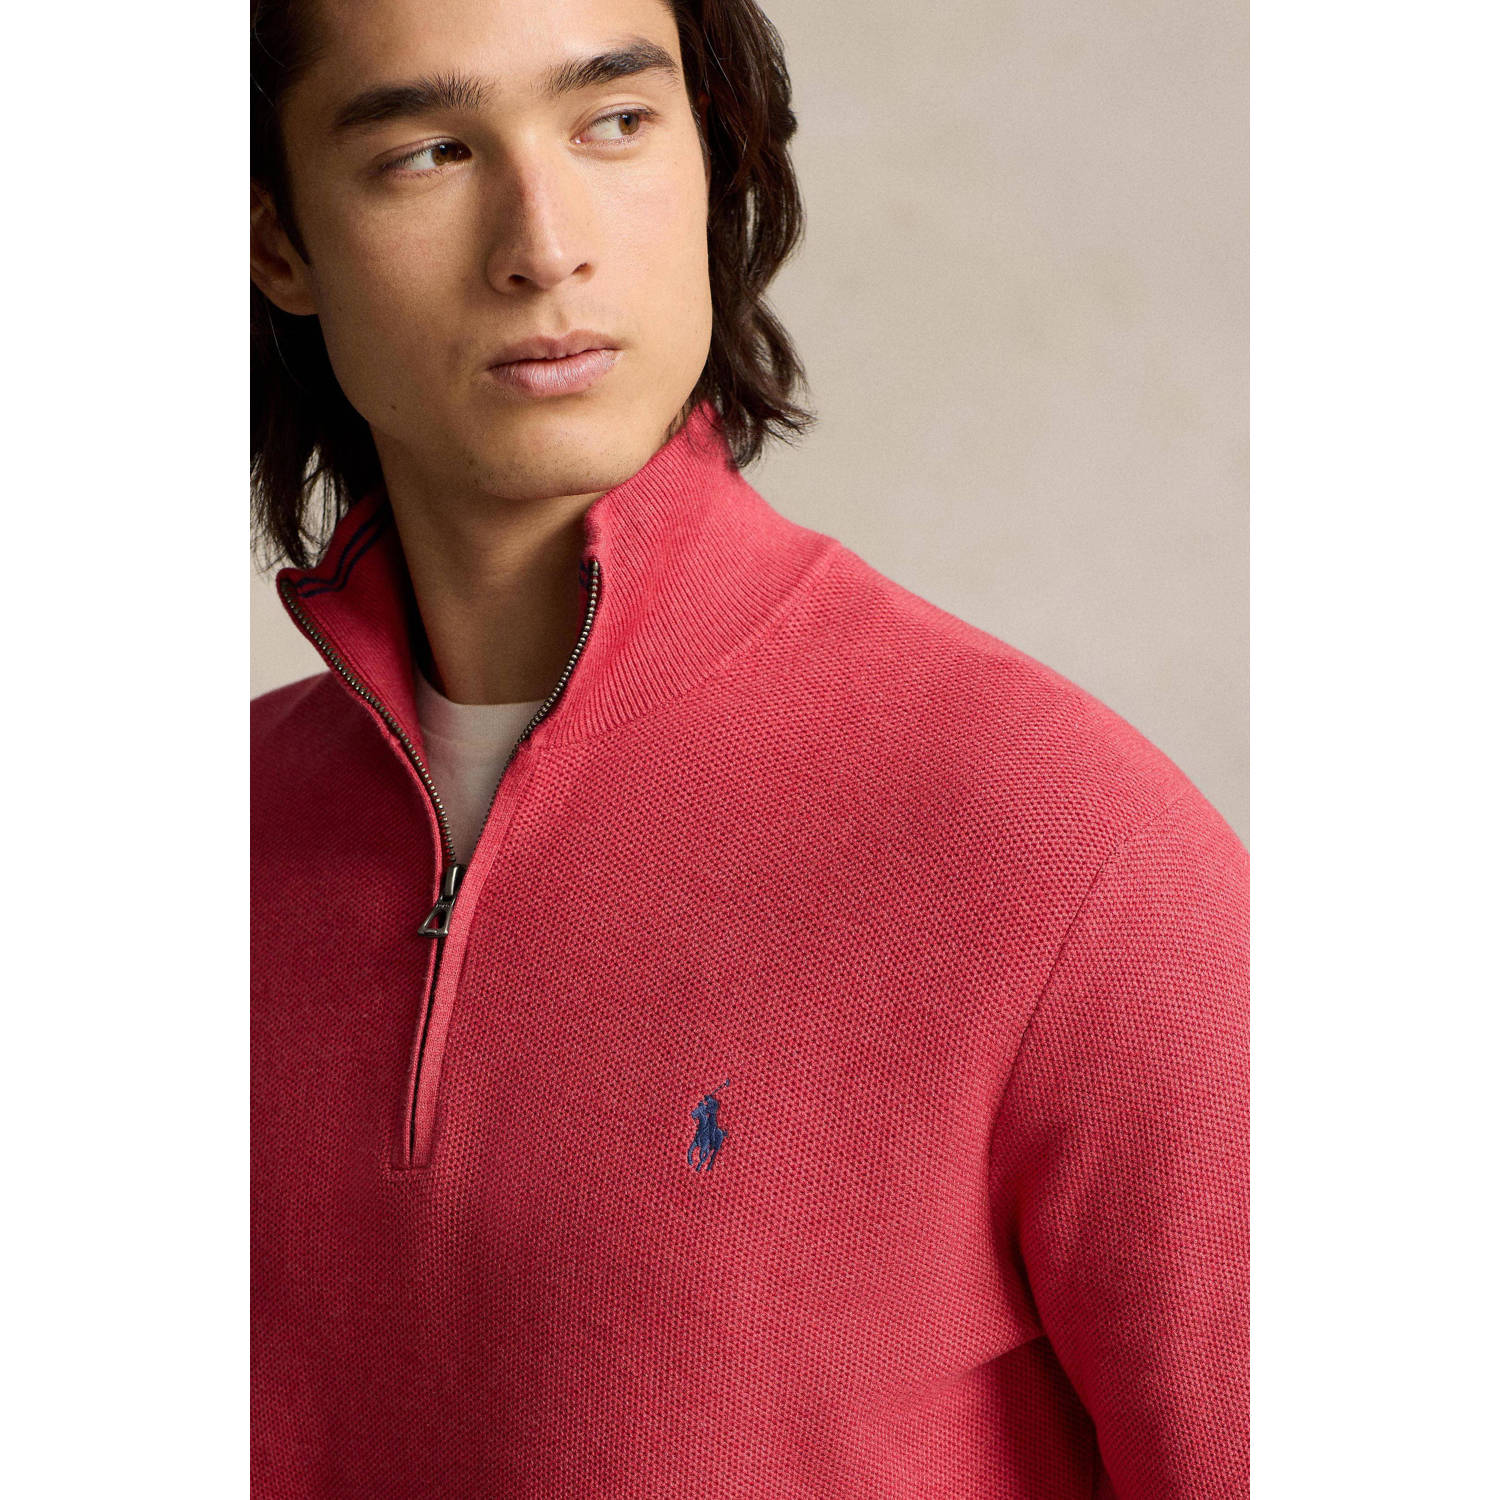 POLO Ralph Lauren trui met logo nantucket red heather